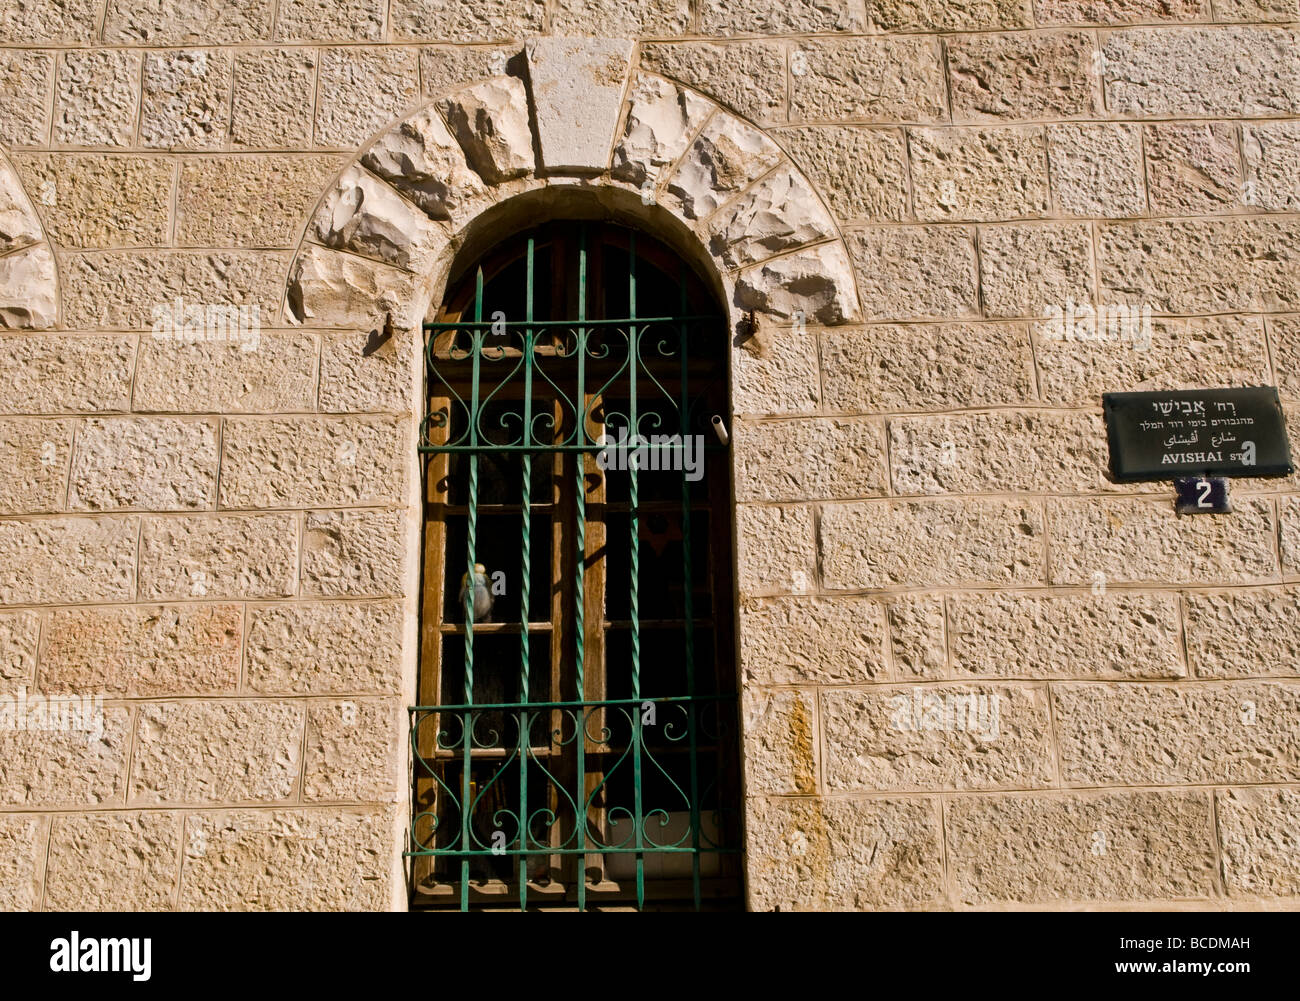 Hermosa arquitectura y diseño en el hermoso barrio de Colonia Alemana en Jerusalén, Israel. Foto de stock